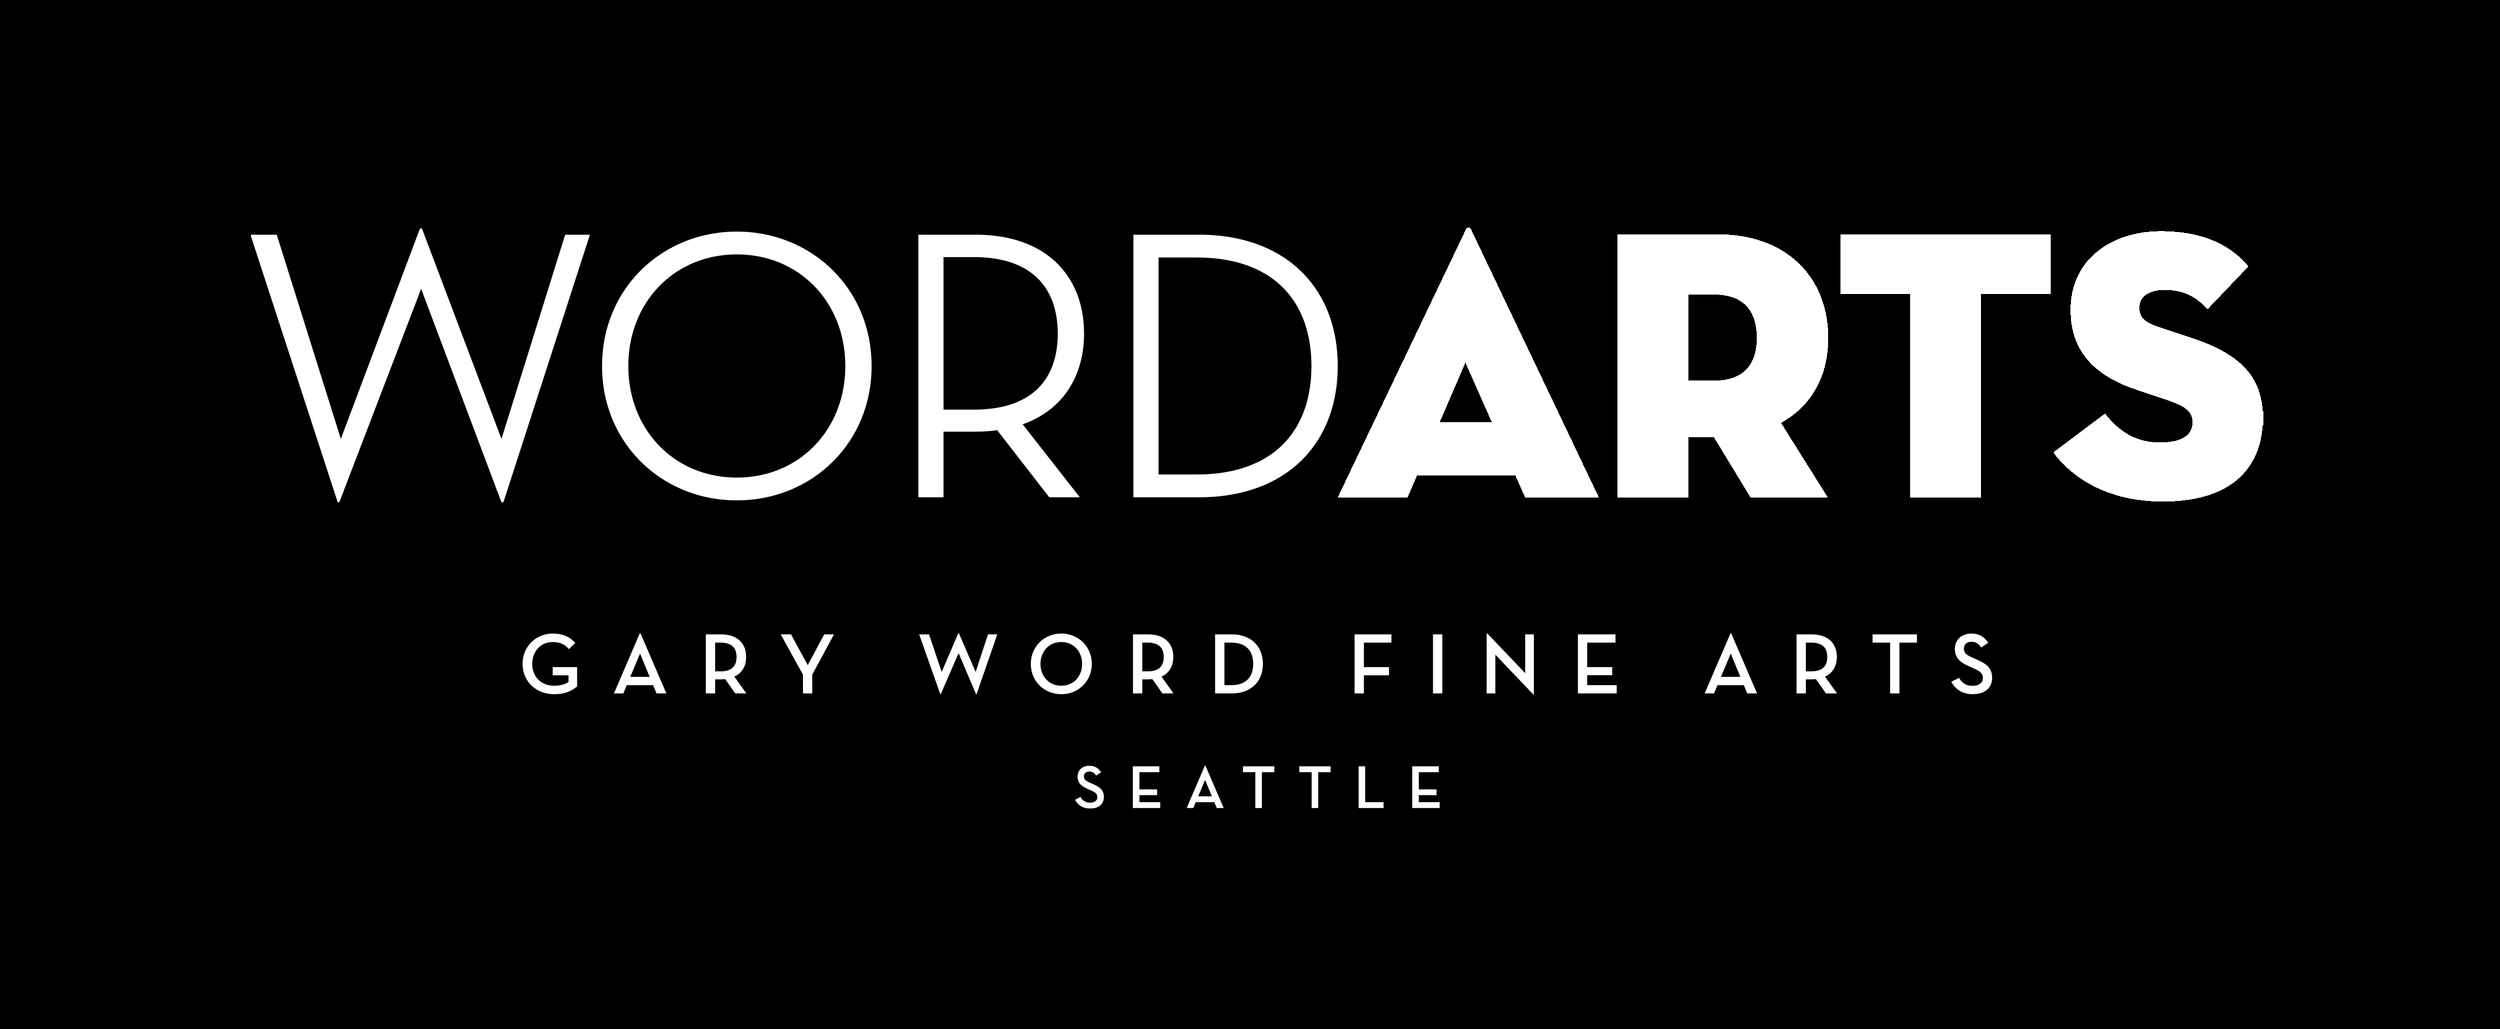 Word Art - Gary Word Fine Art Seattle